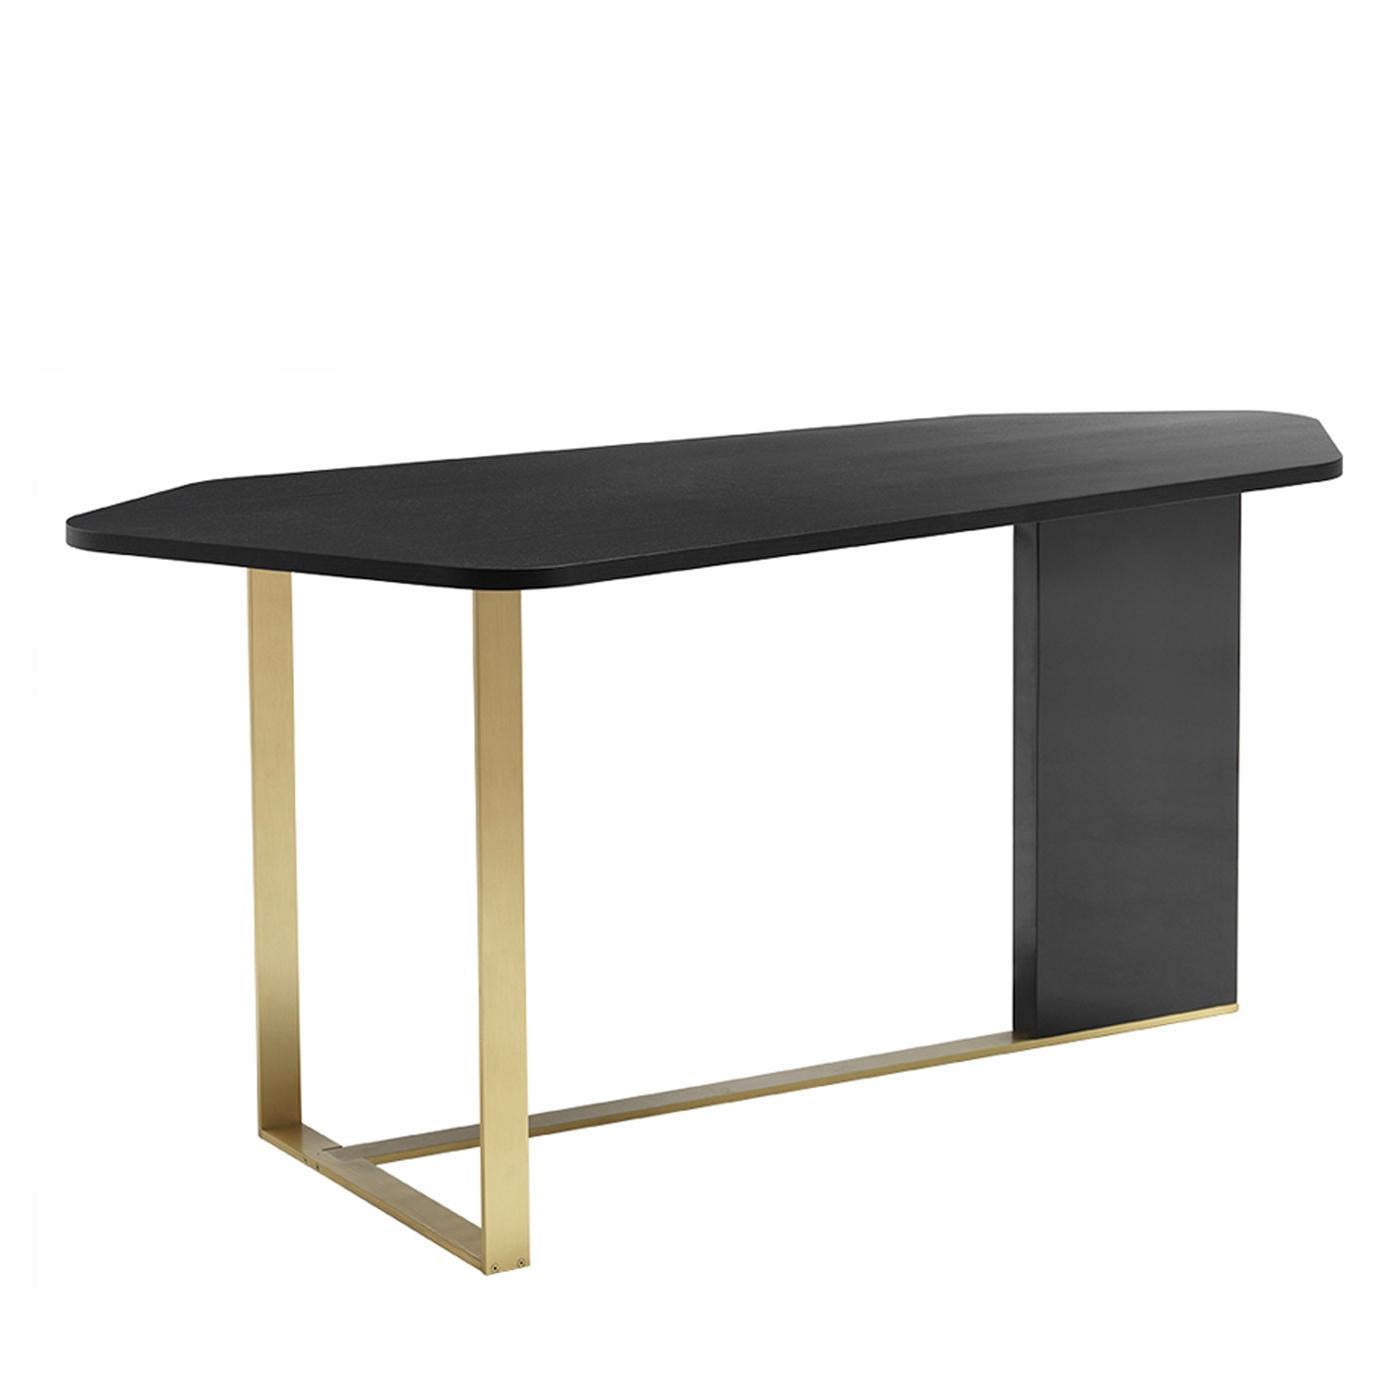 Klare Linien und eine einzigartige Form charakterisieren den Aimo-Schreibtisch. Mit einem Gestell aus satiniertem Messing, einem Unterteil aus rauchglanzlackiertem Sperrholz und einer Platte aus 4 cm Sperrholz mit offenporigem, mattschwarz